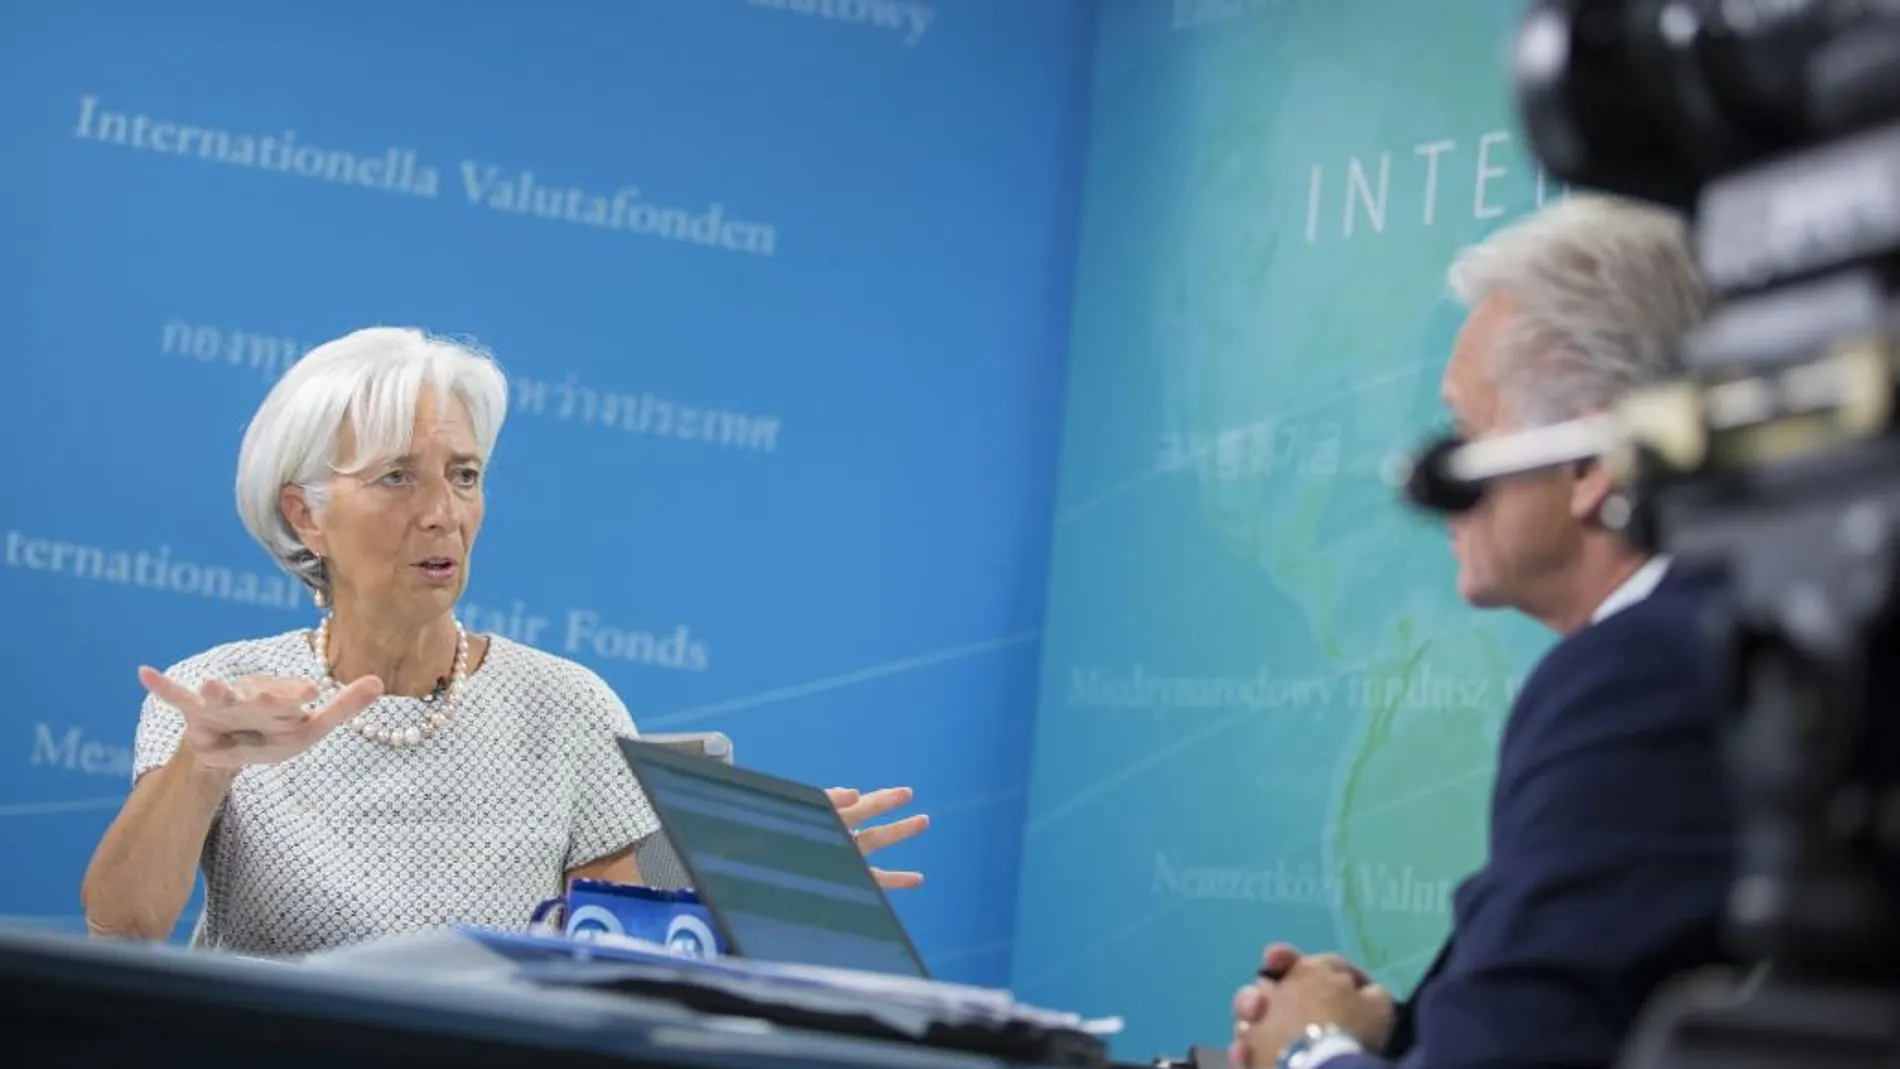 Fotografía facilitada por el Fondo Monetario Internacional (FMI) que muestra a su directora gerente, la francesa Christine Lagarde, durante una rueda de prensa por internet en la sede del FMI